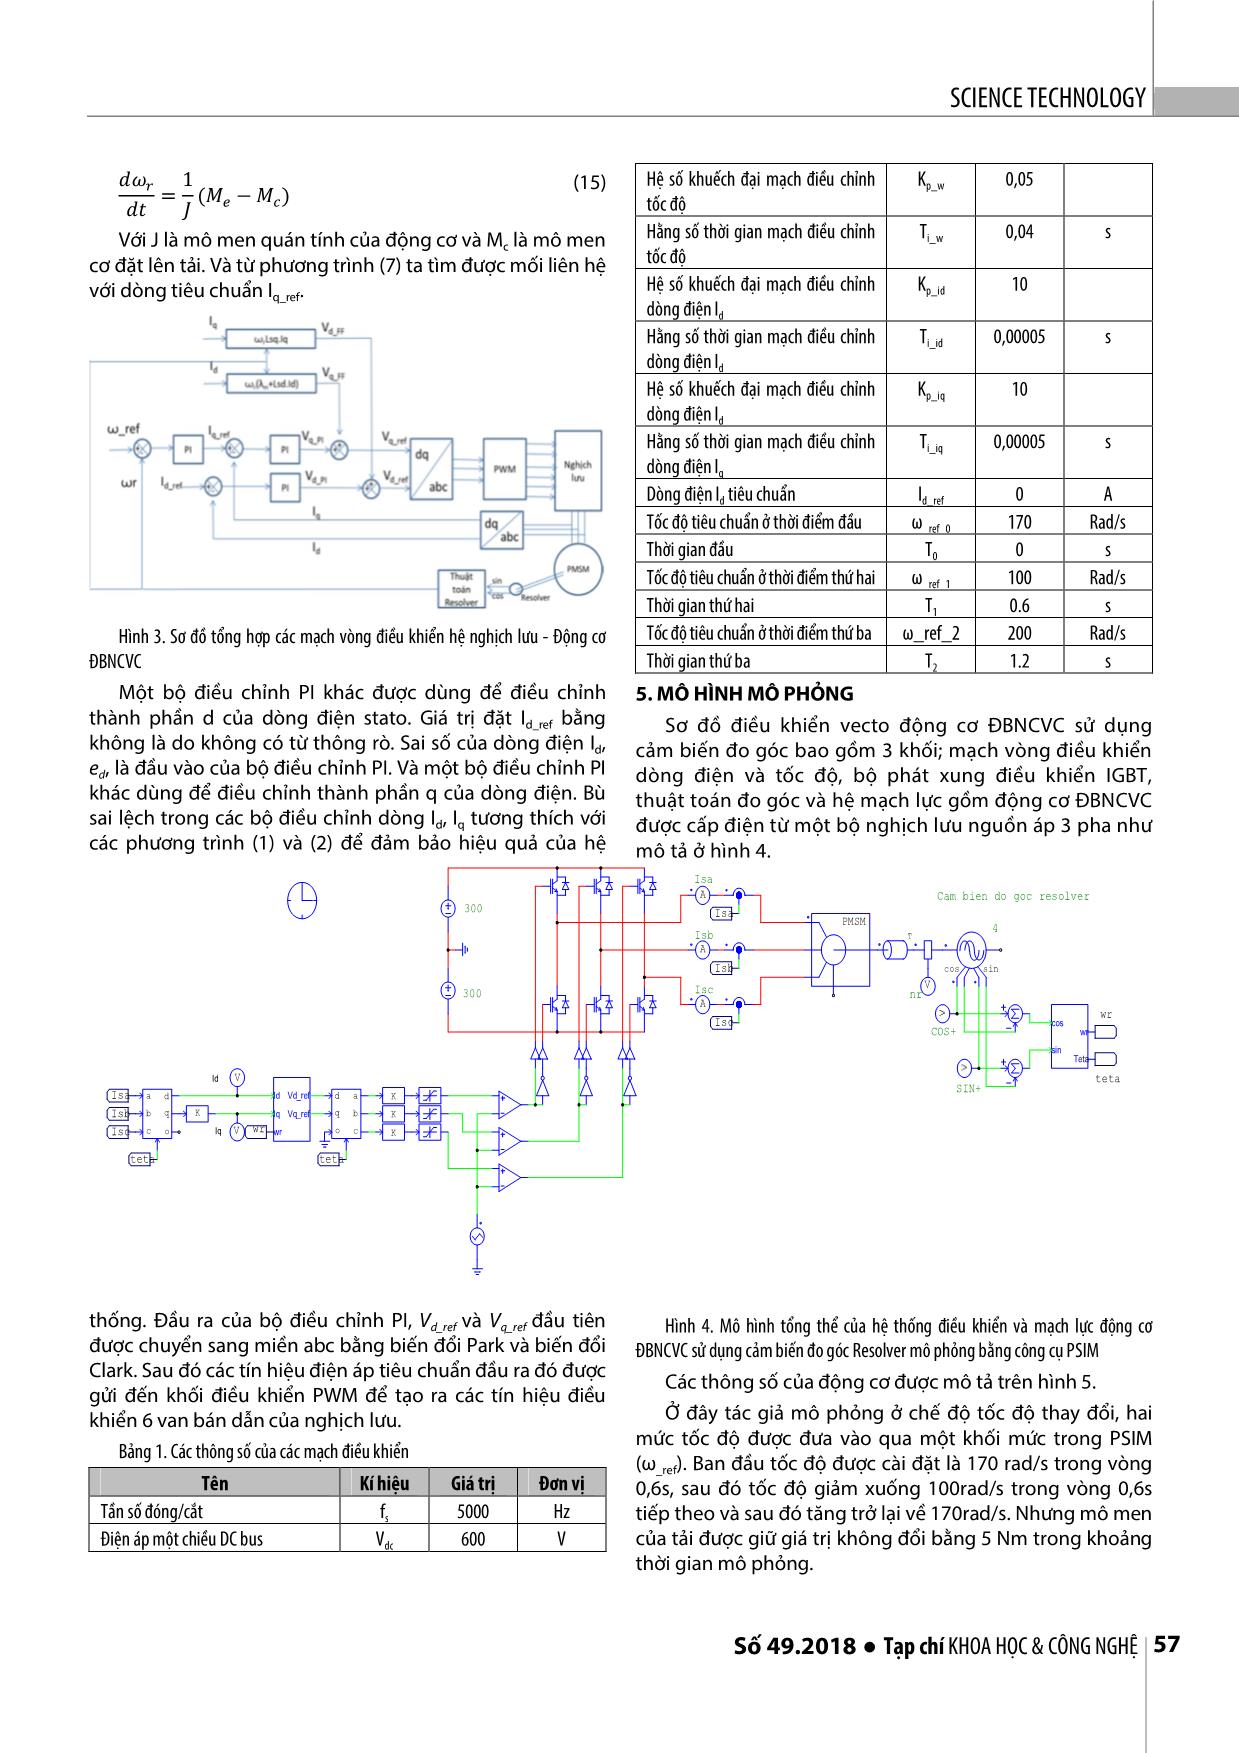 Mô phỏng hệ nghịch lưu - Động cơ đồng bộ nam châm vĩnh cửu sử dụng cảm biến đo góc resolver bằng PSIM trang 3